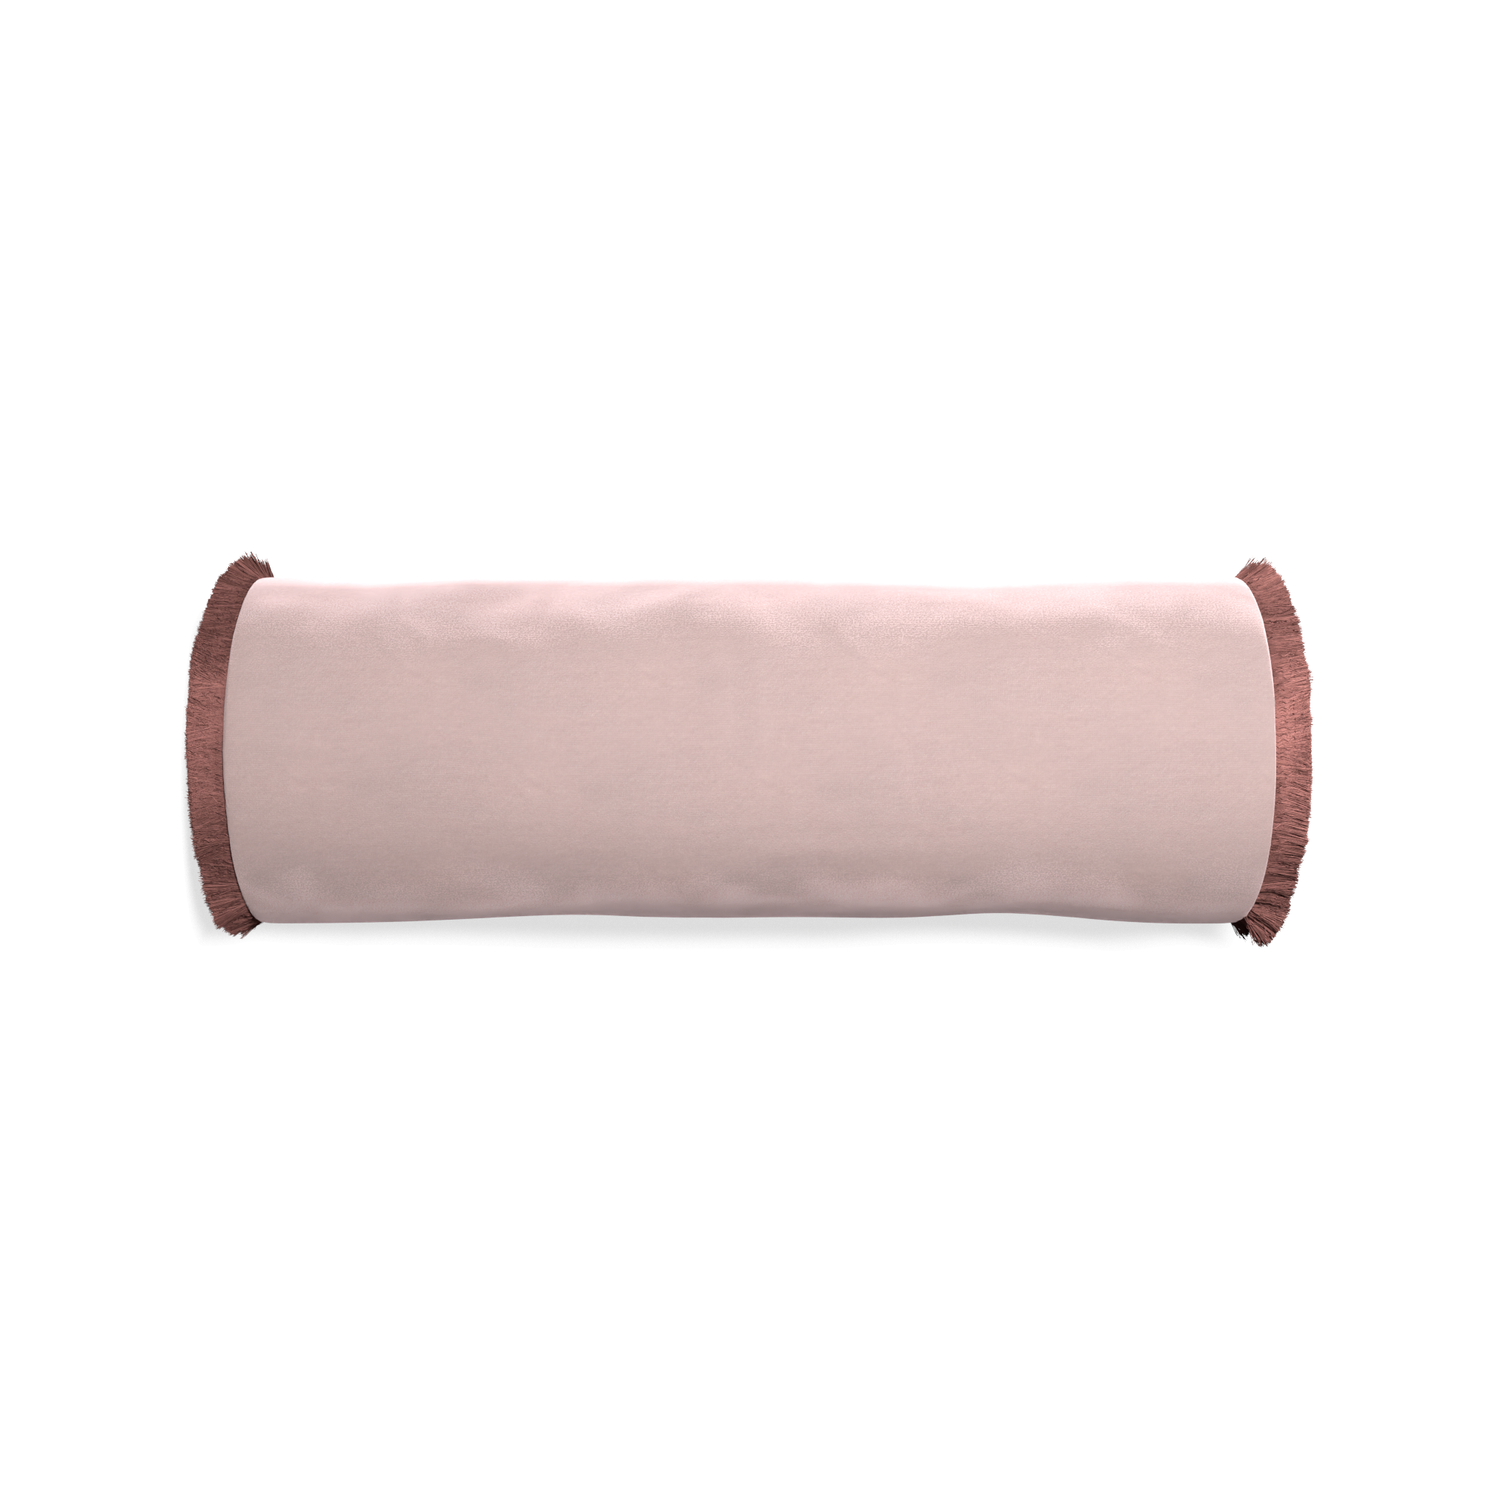 bolster light pink velvet pillow with dusty rose fringe 